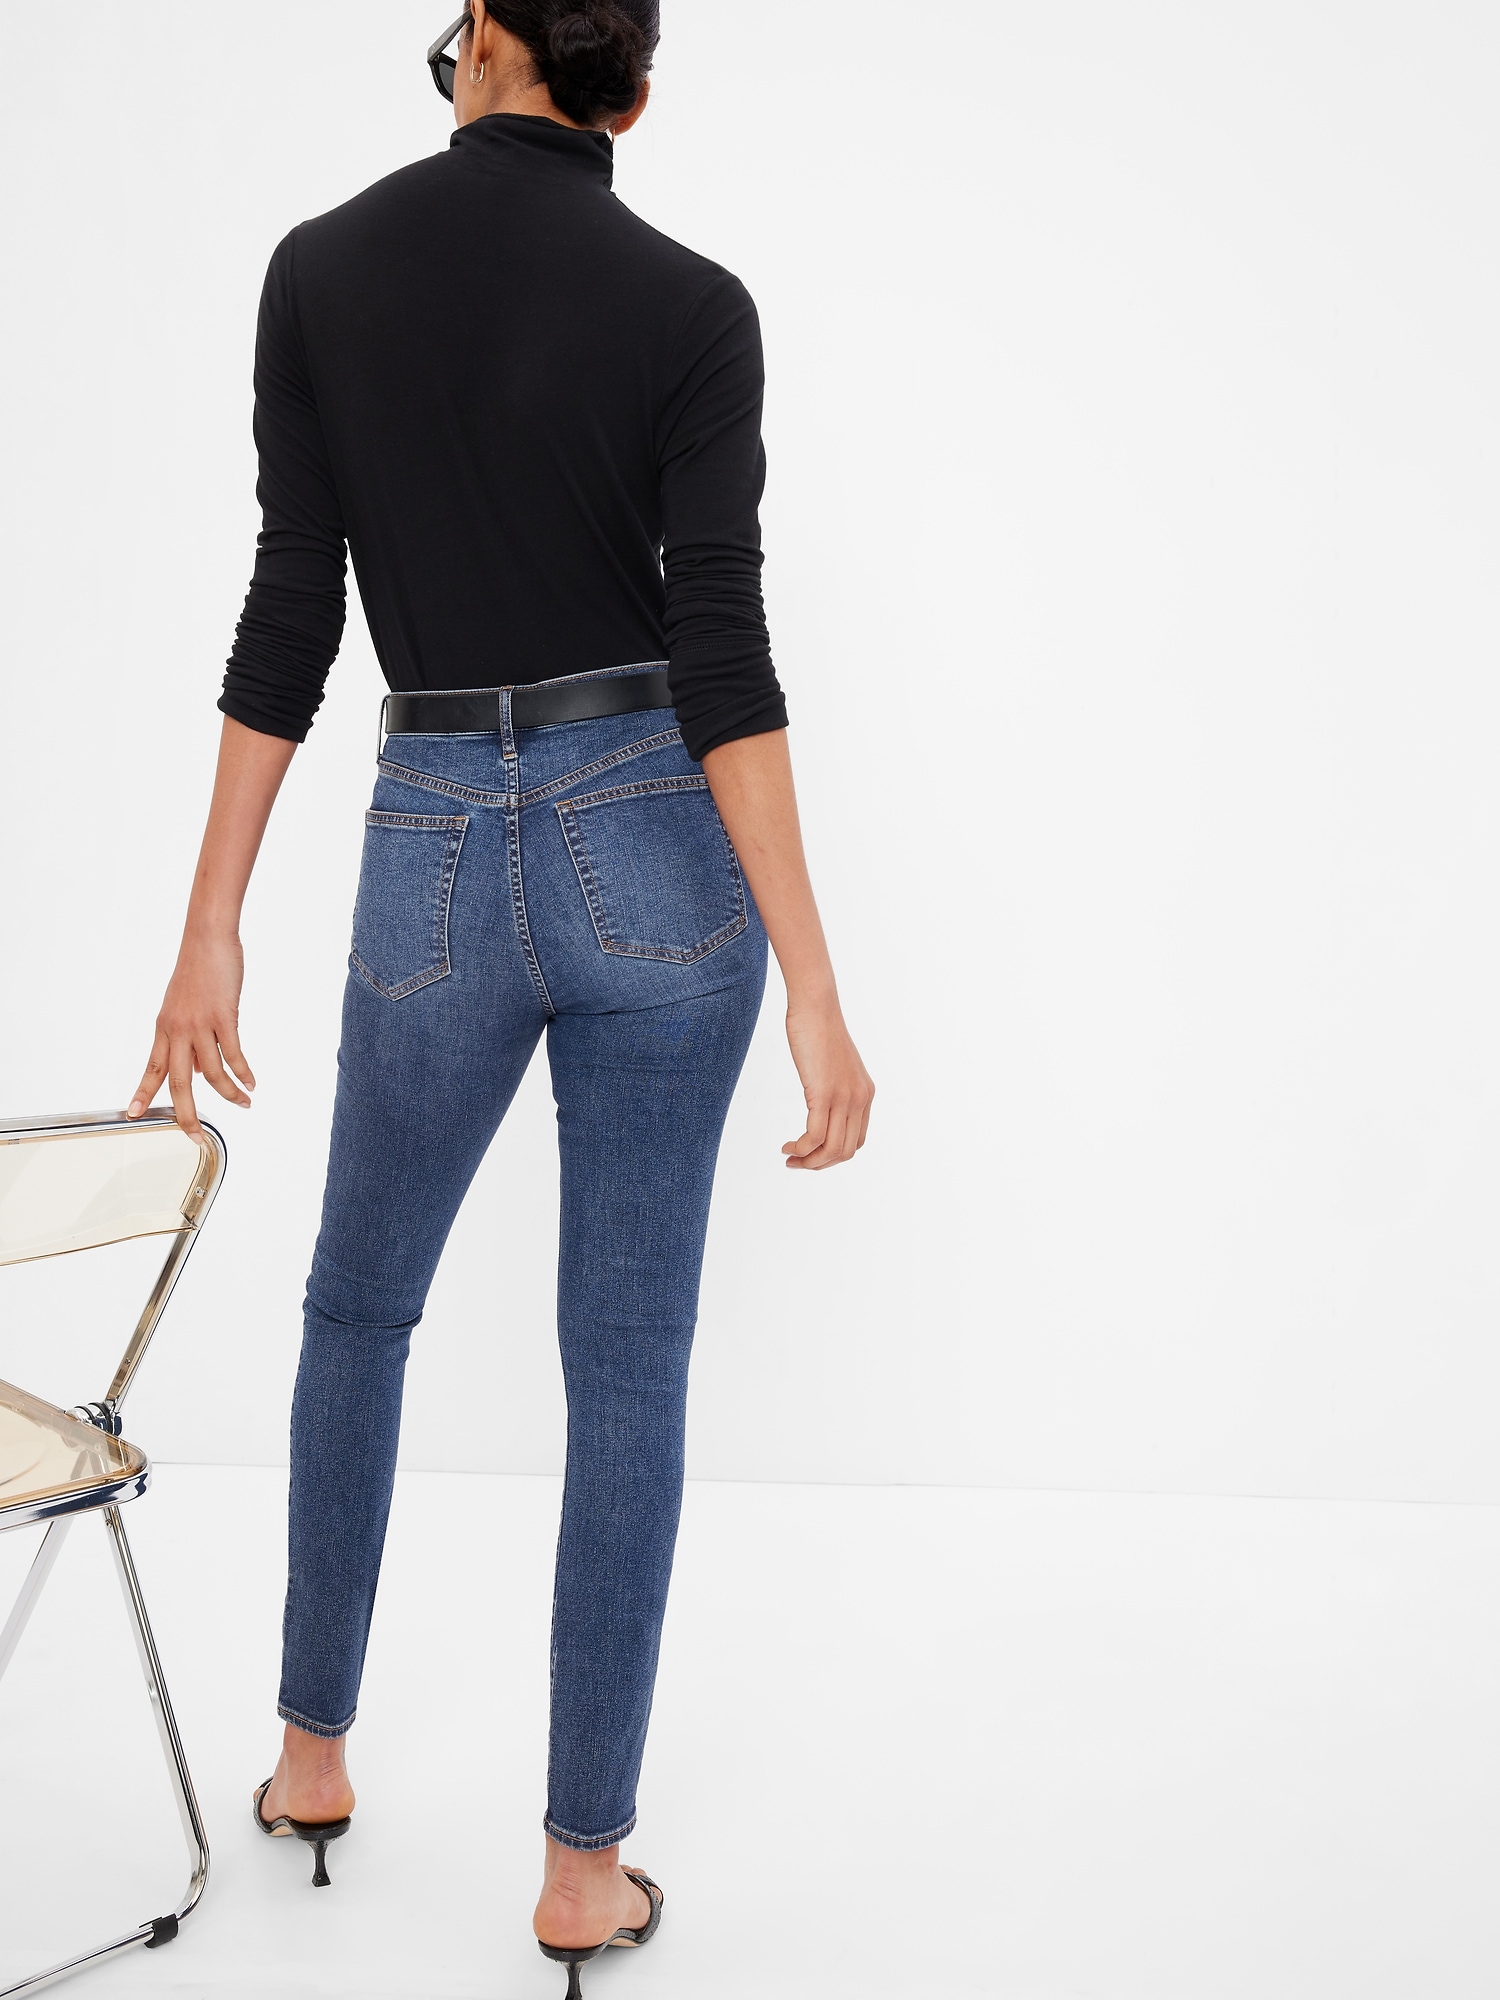 NWT Gap Dark Wash High Rise True Skinny Jeans Soft Wear Stretch Denim 27 R